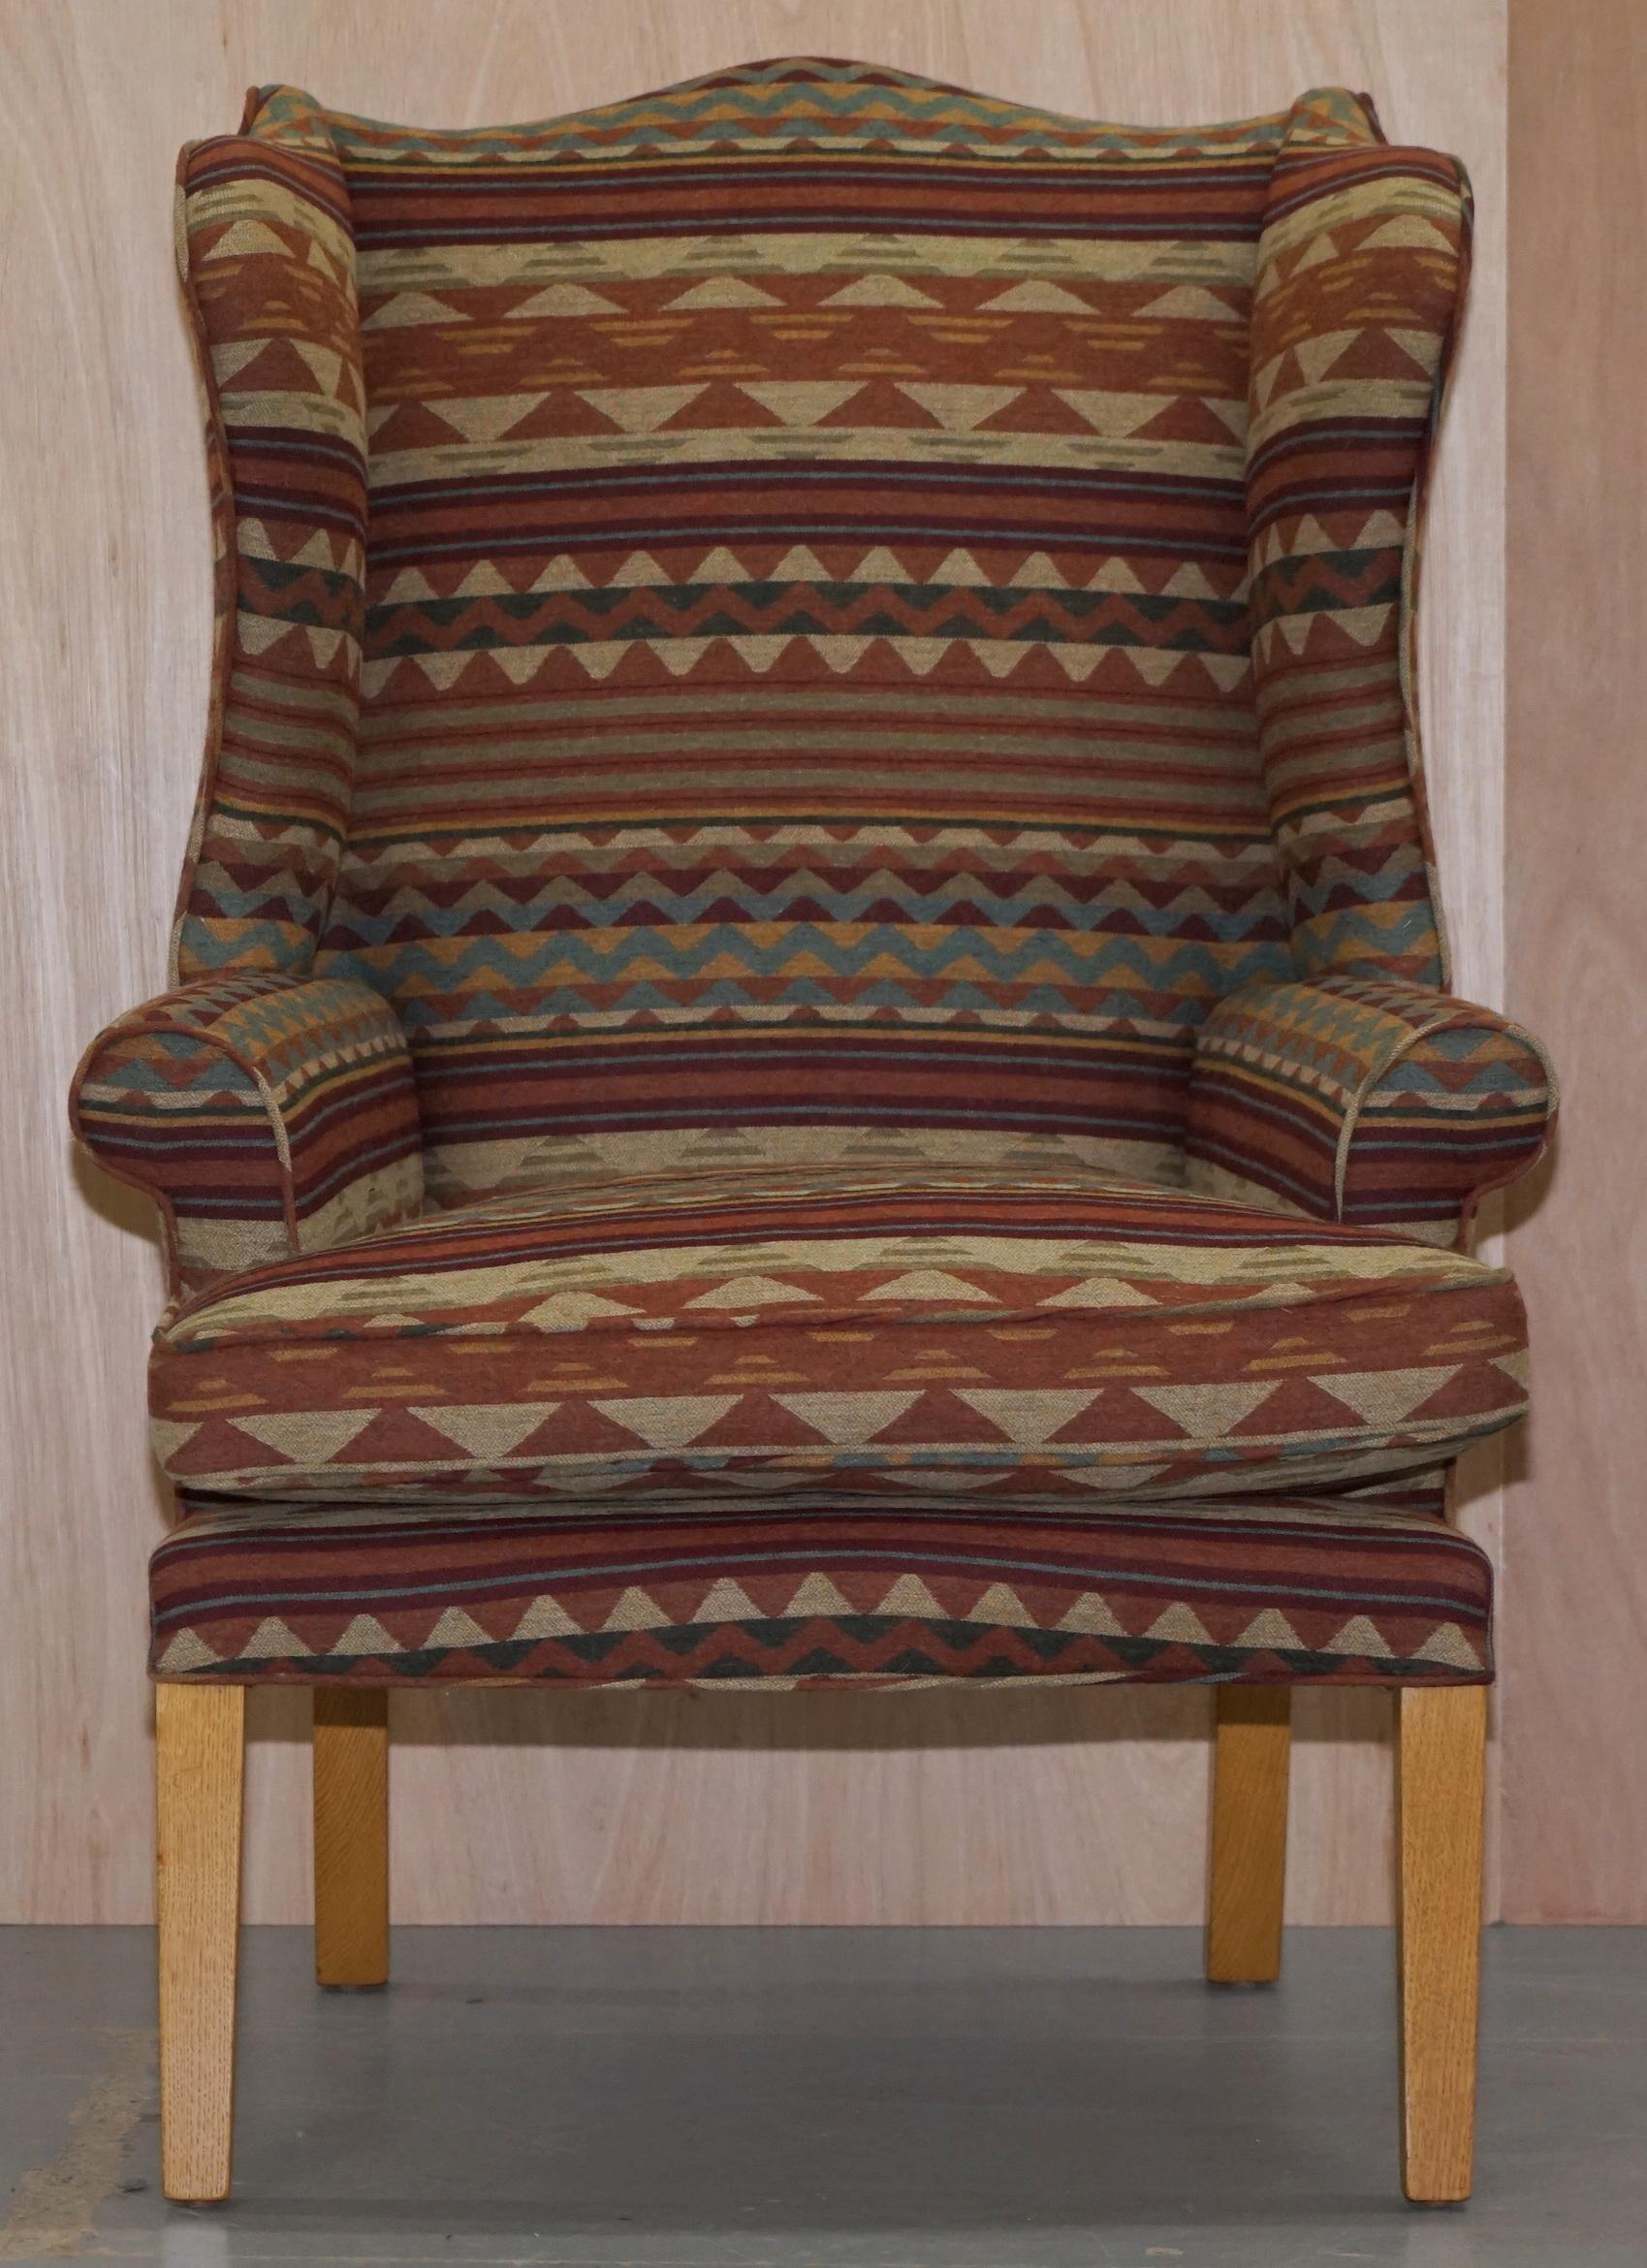 Wir freuen uns, diesen atemberaubenden Kilim gepolsterten Ohrensessel in perfektem Zustand zum Verkauf anbieten zu können 

Eine gut gemachte und dekorative Sessel, die sehr bequem ist, ist die Polsterung Kilim wie erwähnt, die gerade über als